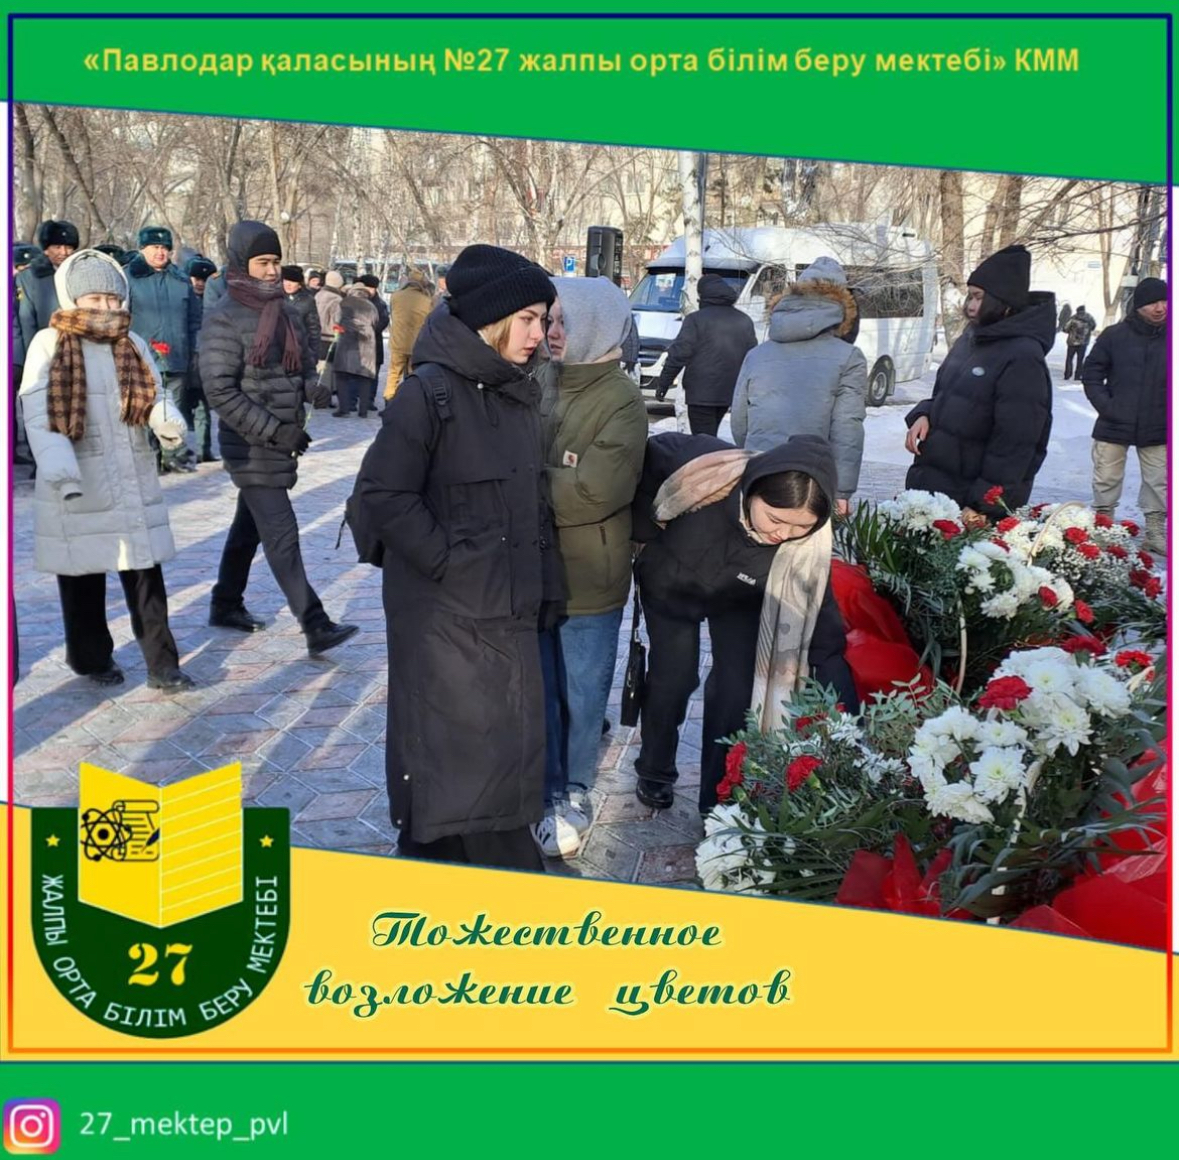 Возложение цветов у памятника Афганцев, посвящённое 35 - летию вывода Советских войск из Афганистана.